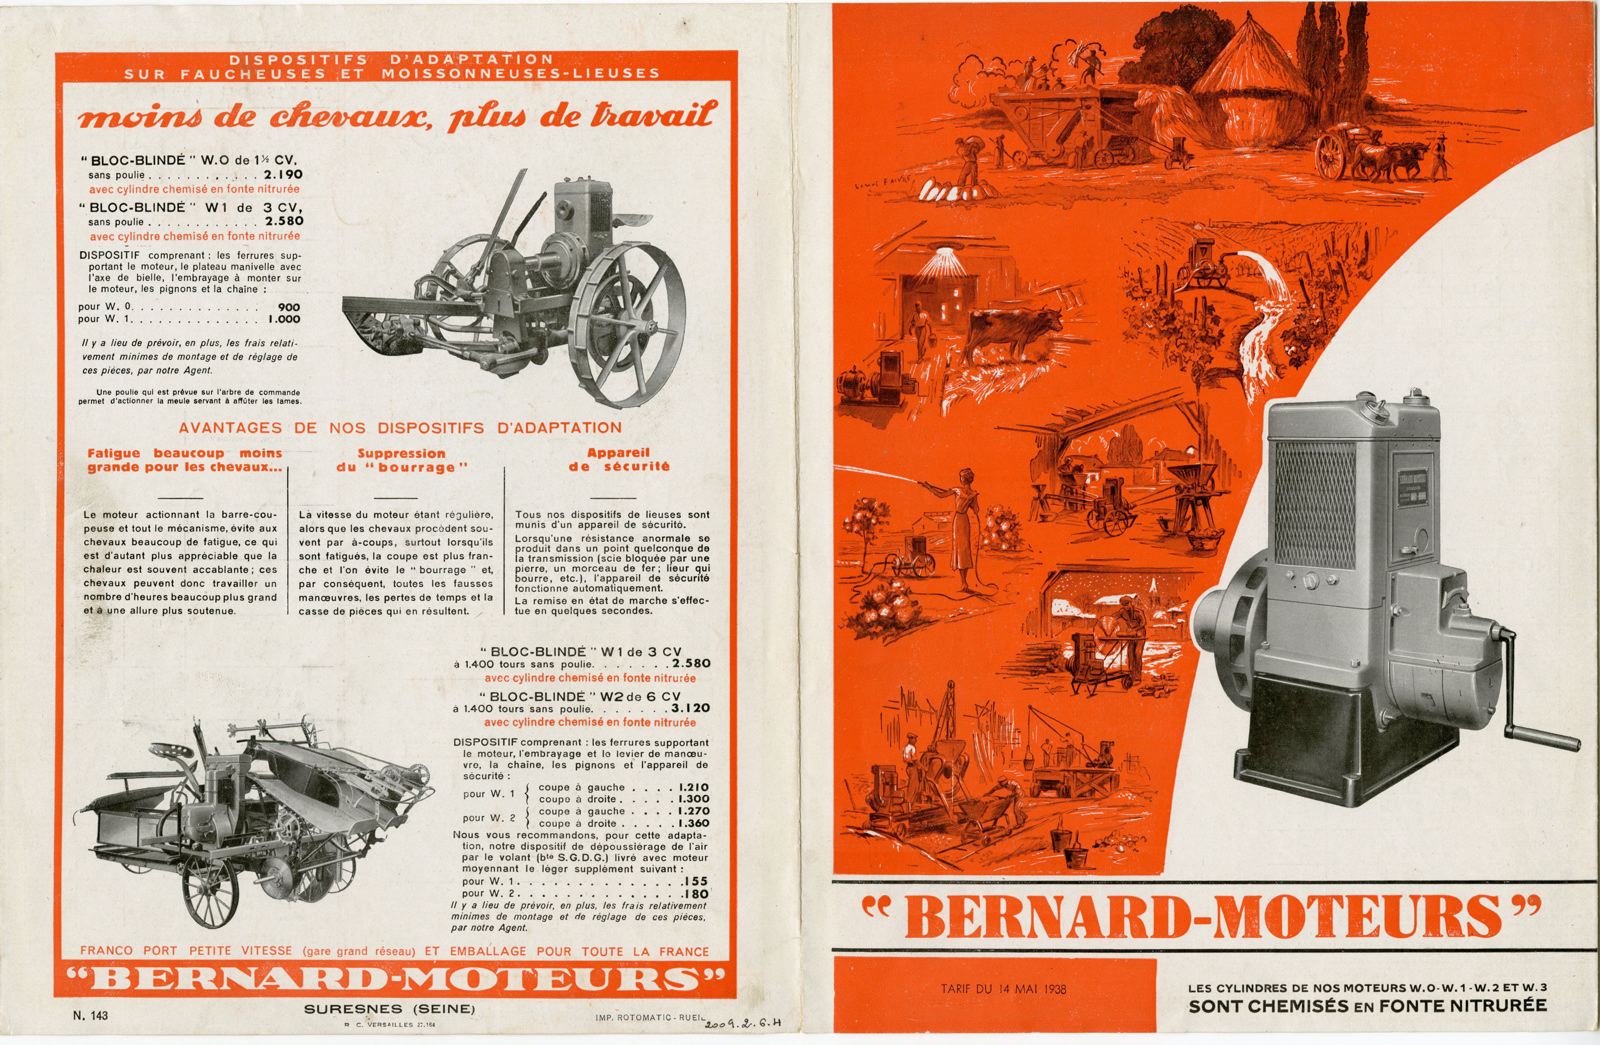 Dépliant "Bernard-Moteurs" - tarif du 14 mai 1938